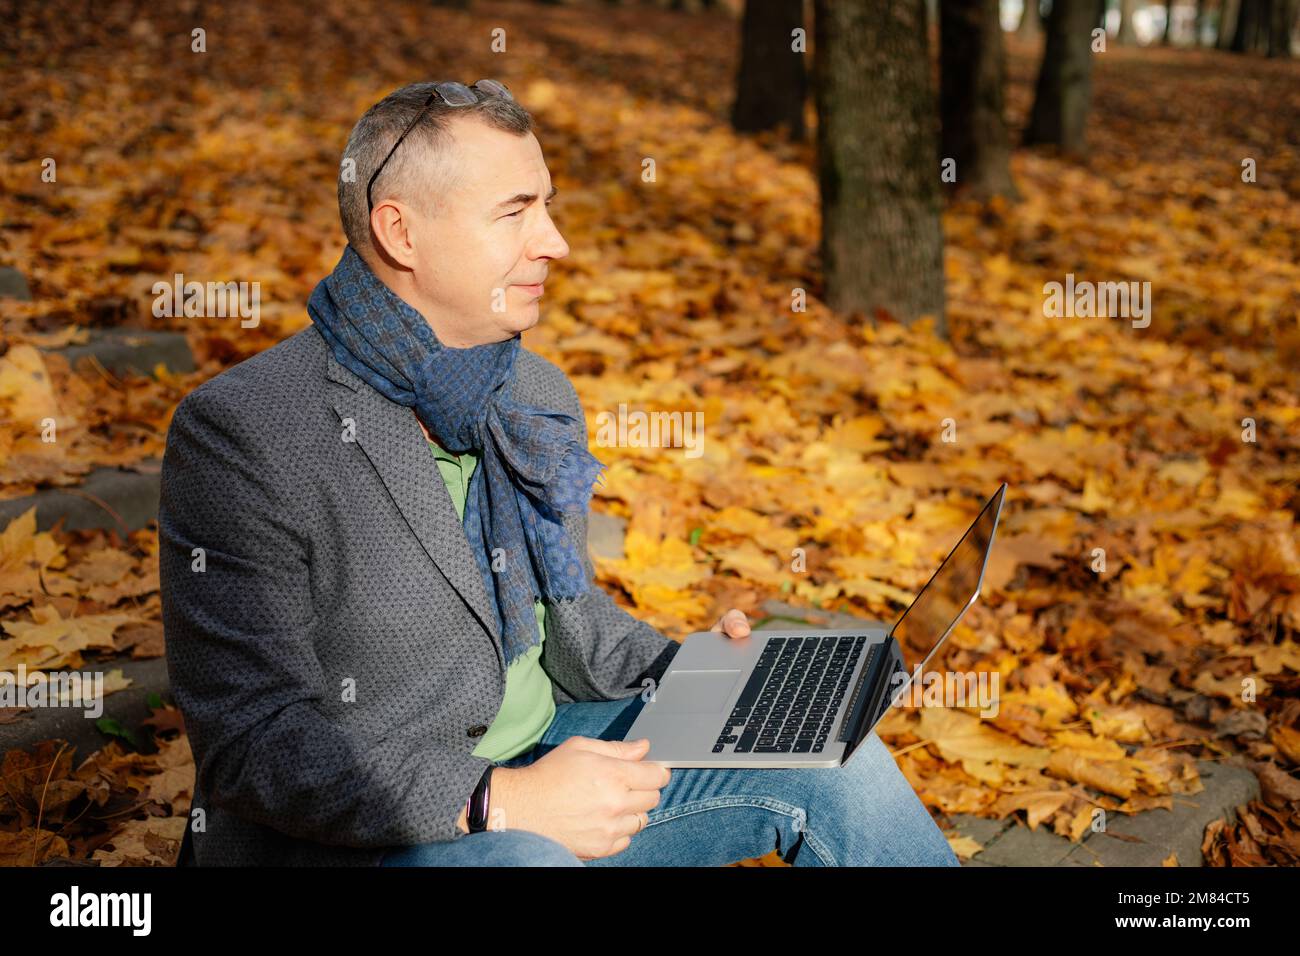 Un homme d'affaires vieillissant s'assoit dans un escalier recouvert de feuilles jaunes tombées dans la forêt et travaille sur un ordinateur portable, vue latérale. Banque D'Images